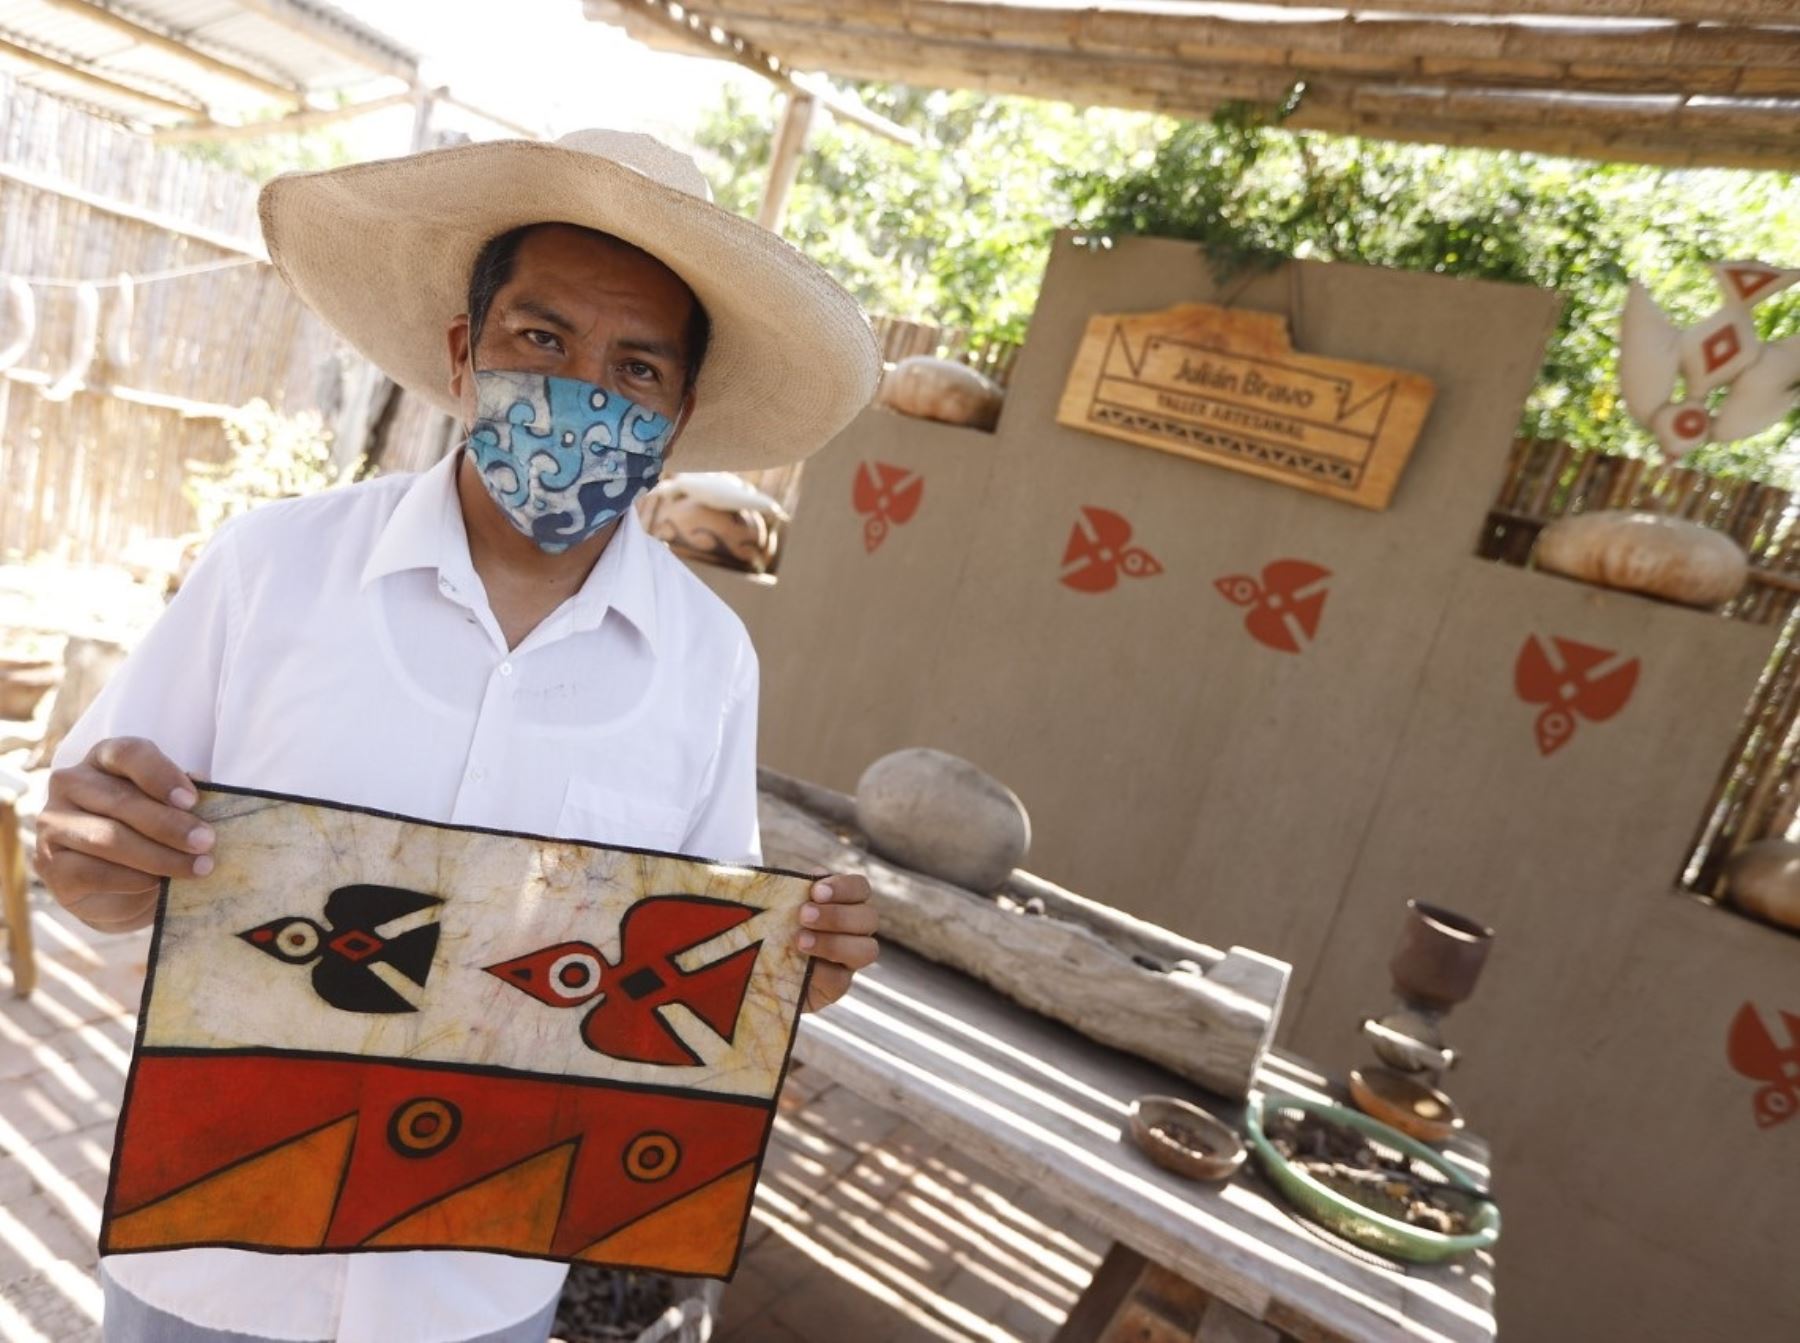 Un total de 35 artesanos de todo el país exponen sus mejores trabajos en la feria macrorregional que se realiza en Chiclayo, en Lambayeque, hasta este domingo 28 de noviembre. ANDINA/Difusión